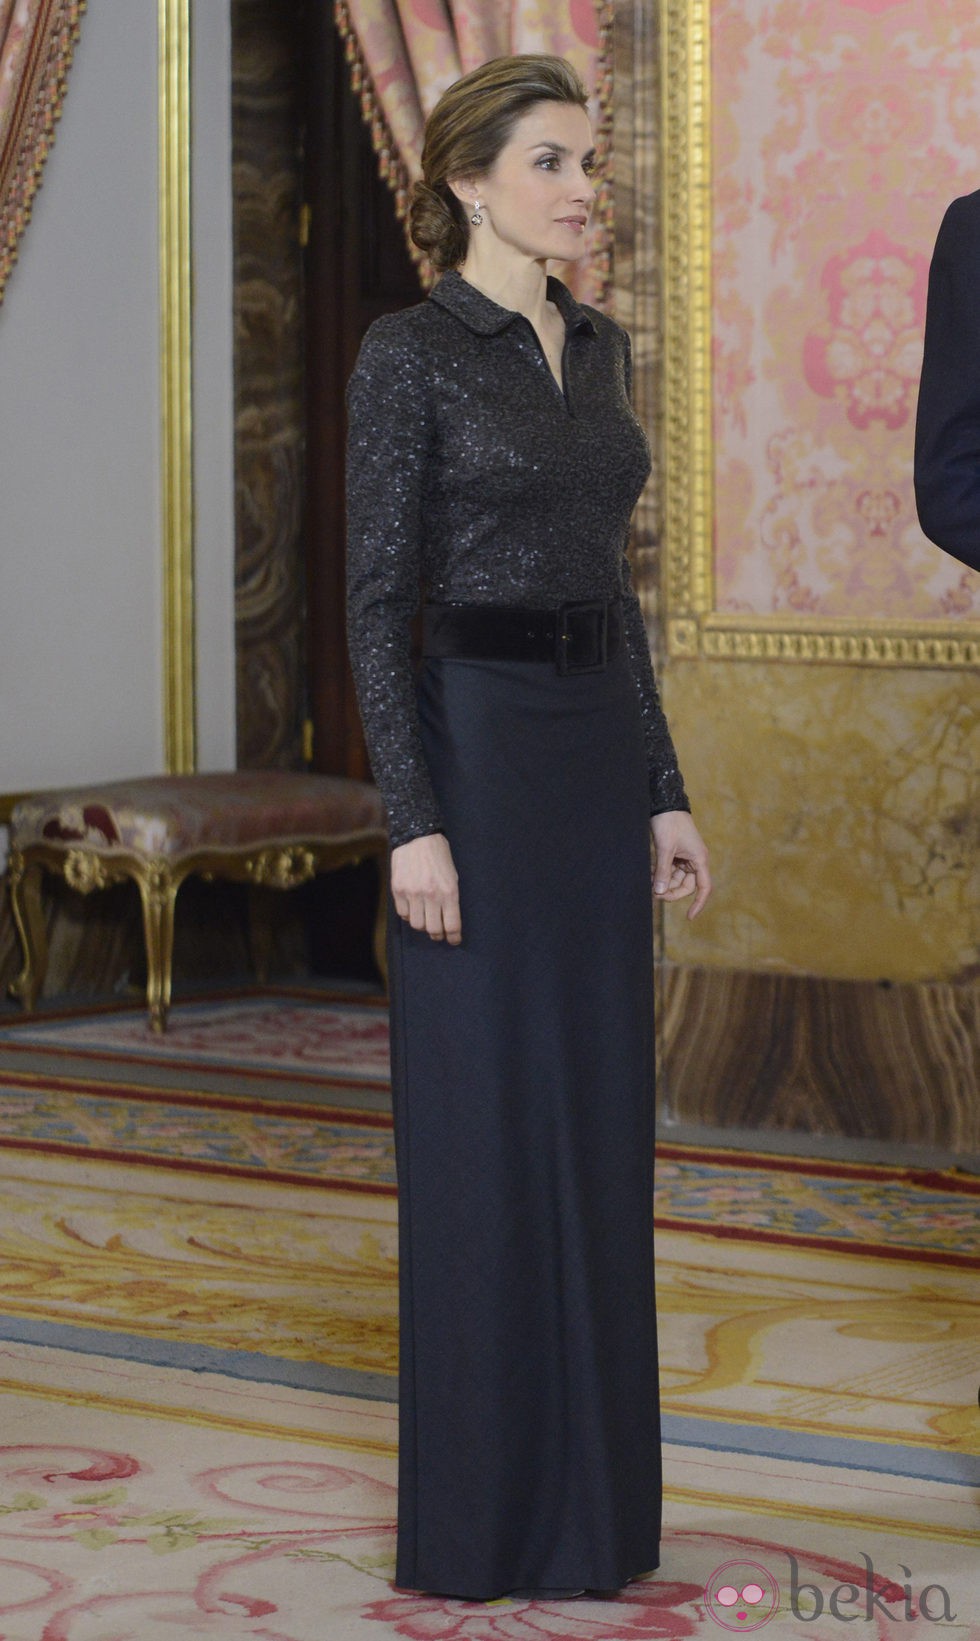 La Reina Letizia en su primera recepción al Cuerpo Diplomático como Reina de España